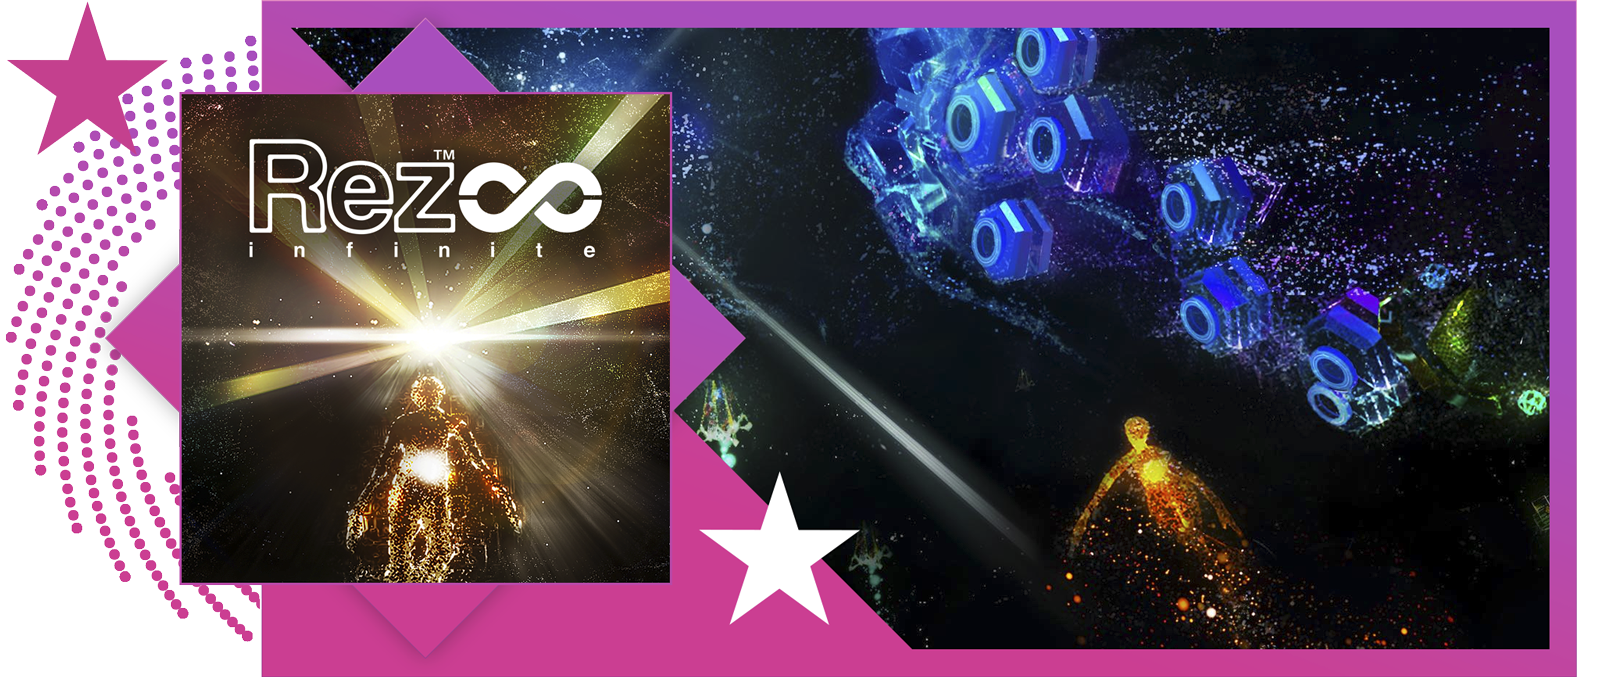 Nejlepší rytmické hry – obrázek s klíčovou grafikou a ukázkou ze hry Rez Infinite